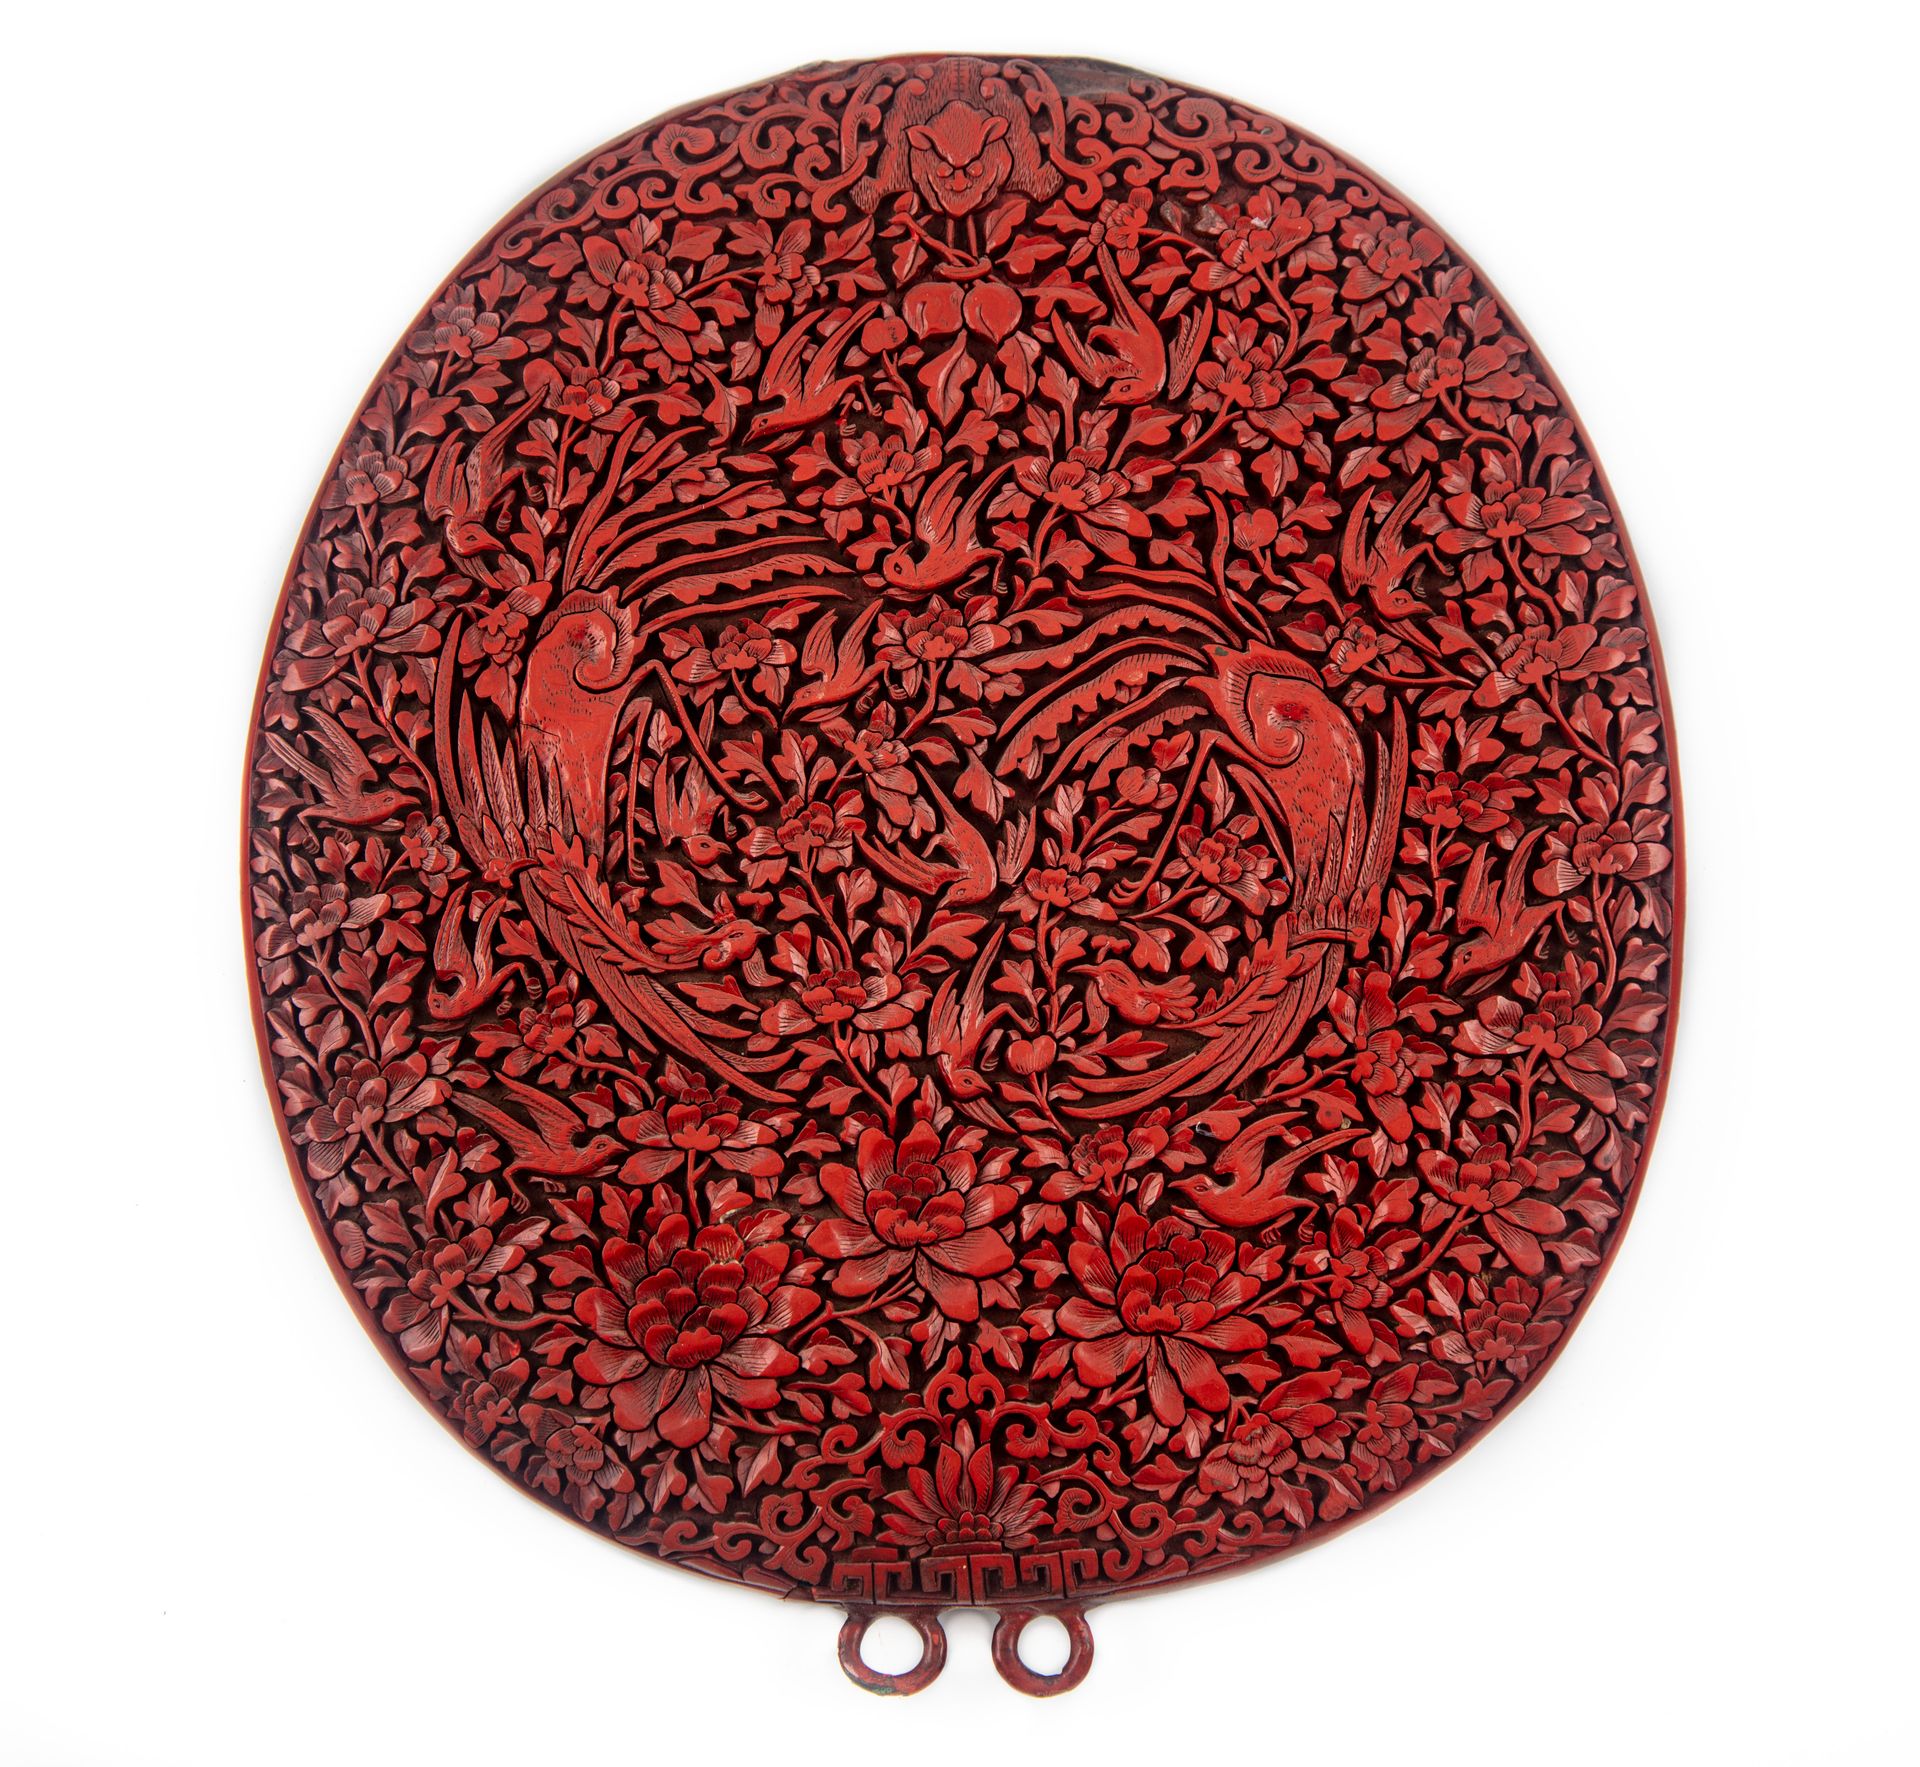 CHINE 中国 - 19世纪

朱砂红漆椭圆形镜子，装饰有两只面对面的凤凰和喜鹊在树叶和莲花中飞翔的图案

H.25厘米；宽22.5厘米

小的缺失和裂缝